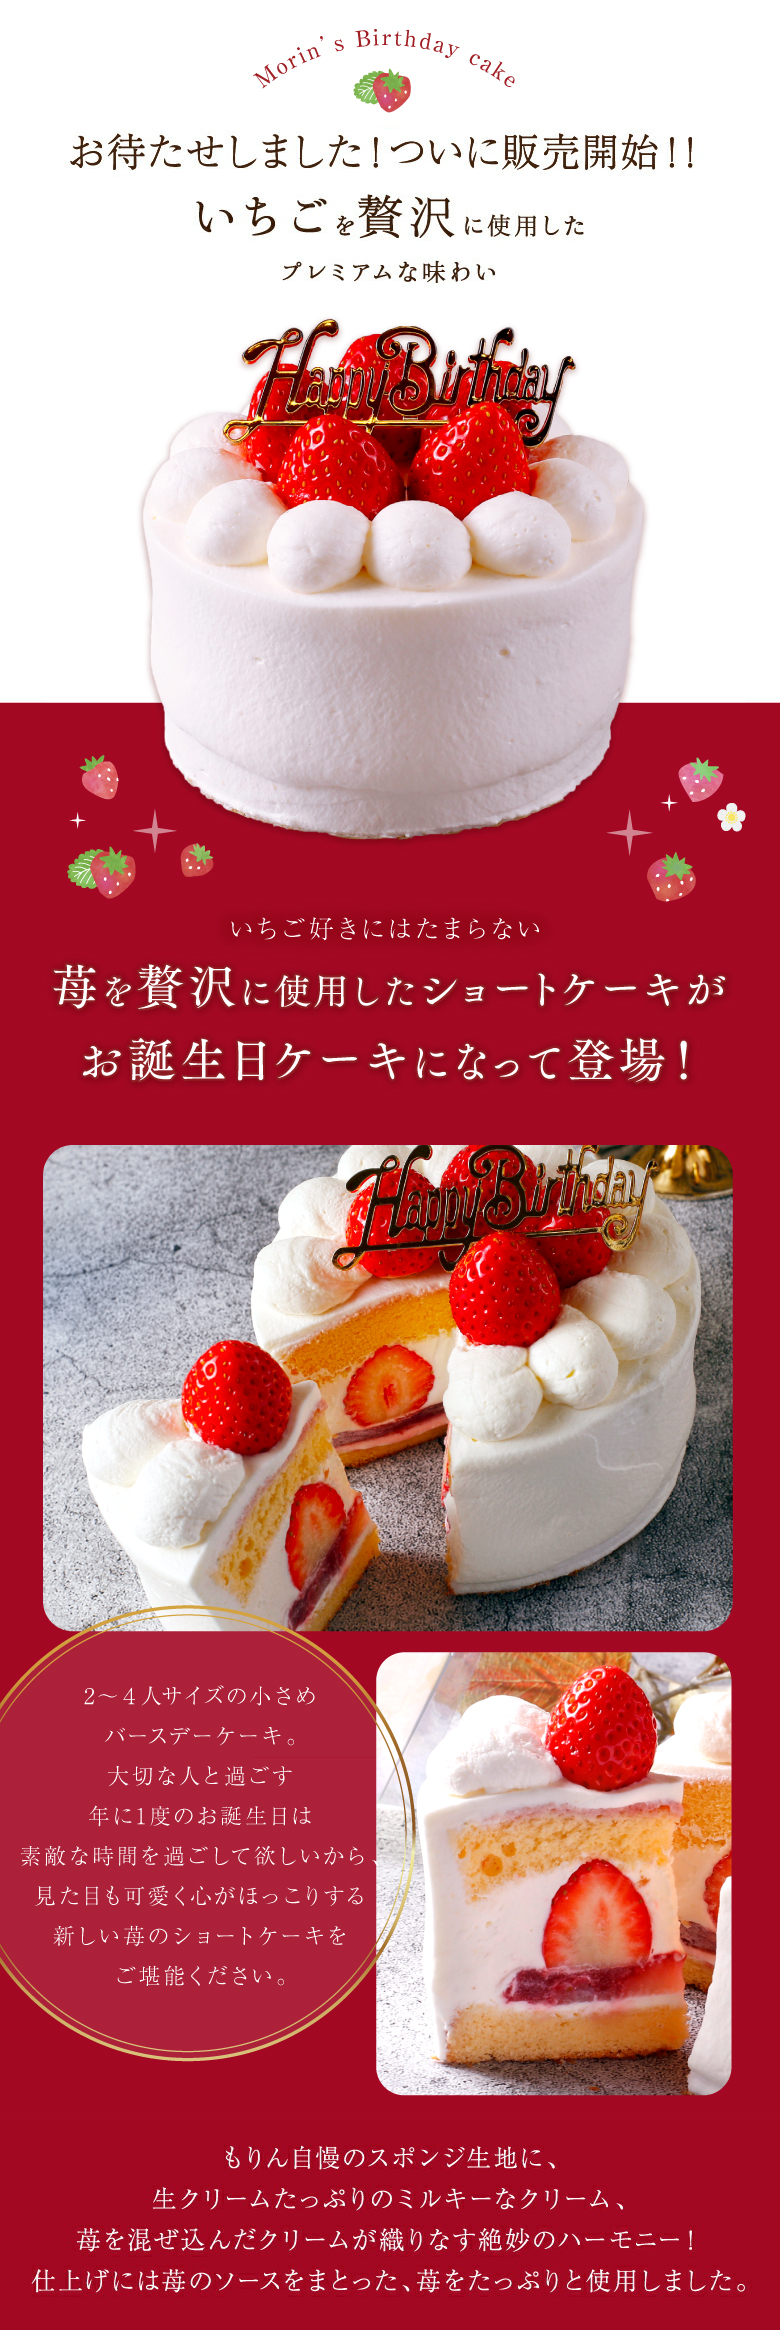 市場 送料無料 ショートケーキ 4号 2人 苺 12cm お誕生日ケーキ バースデーケーキ イチゴ いちご 4人